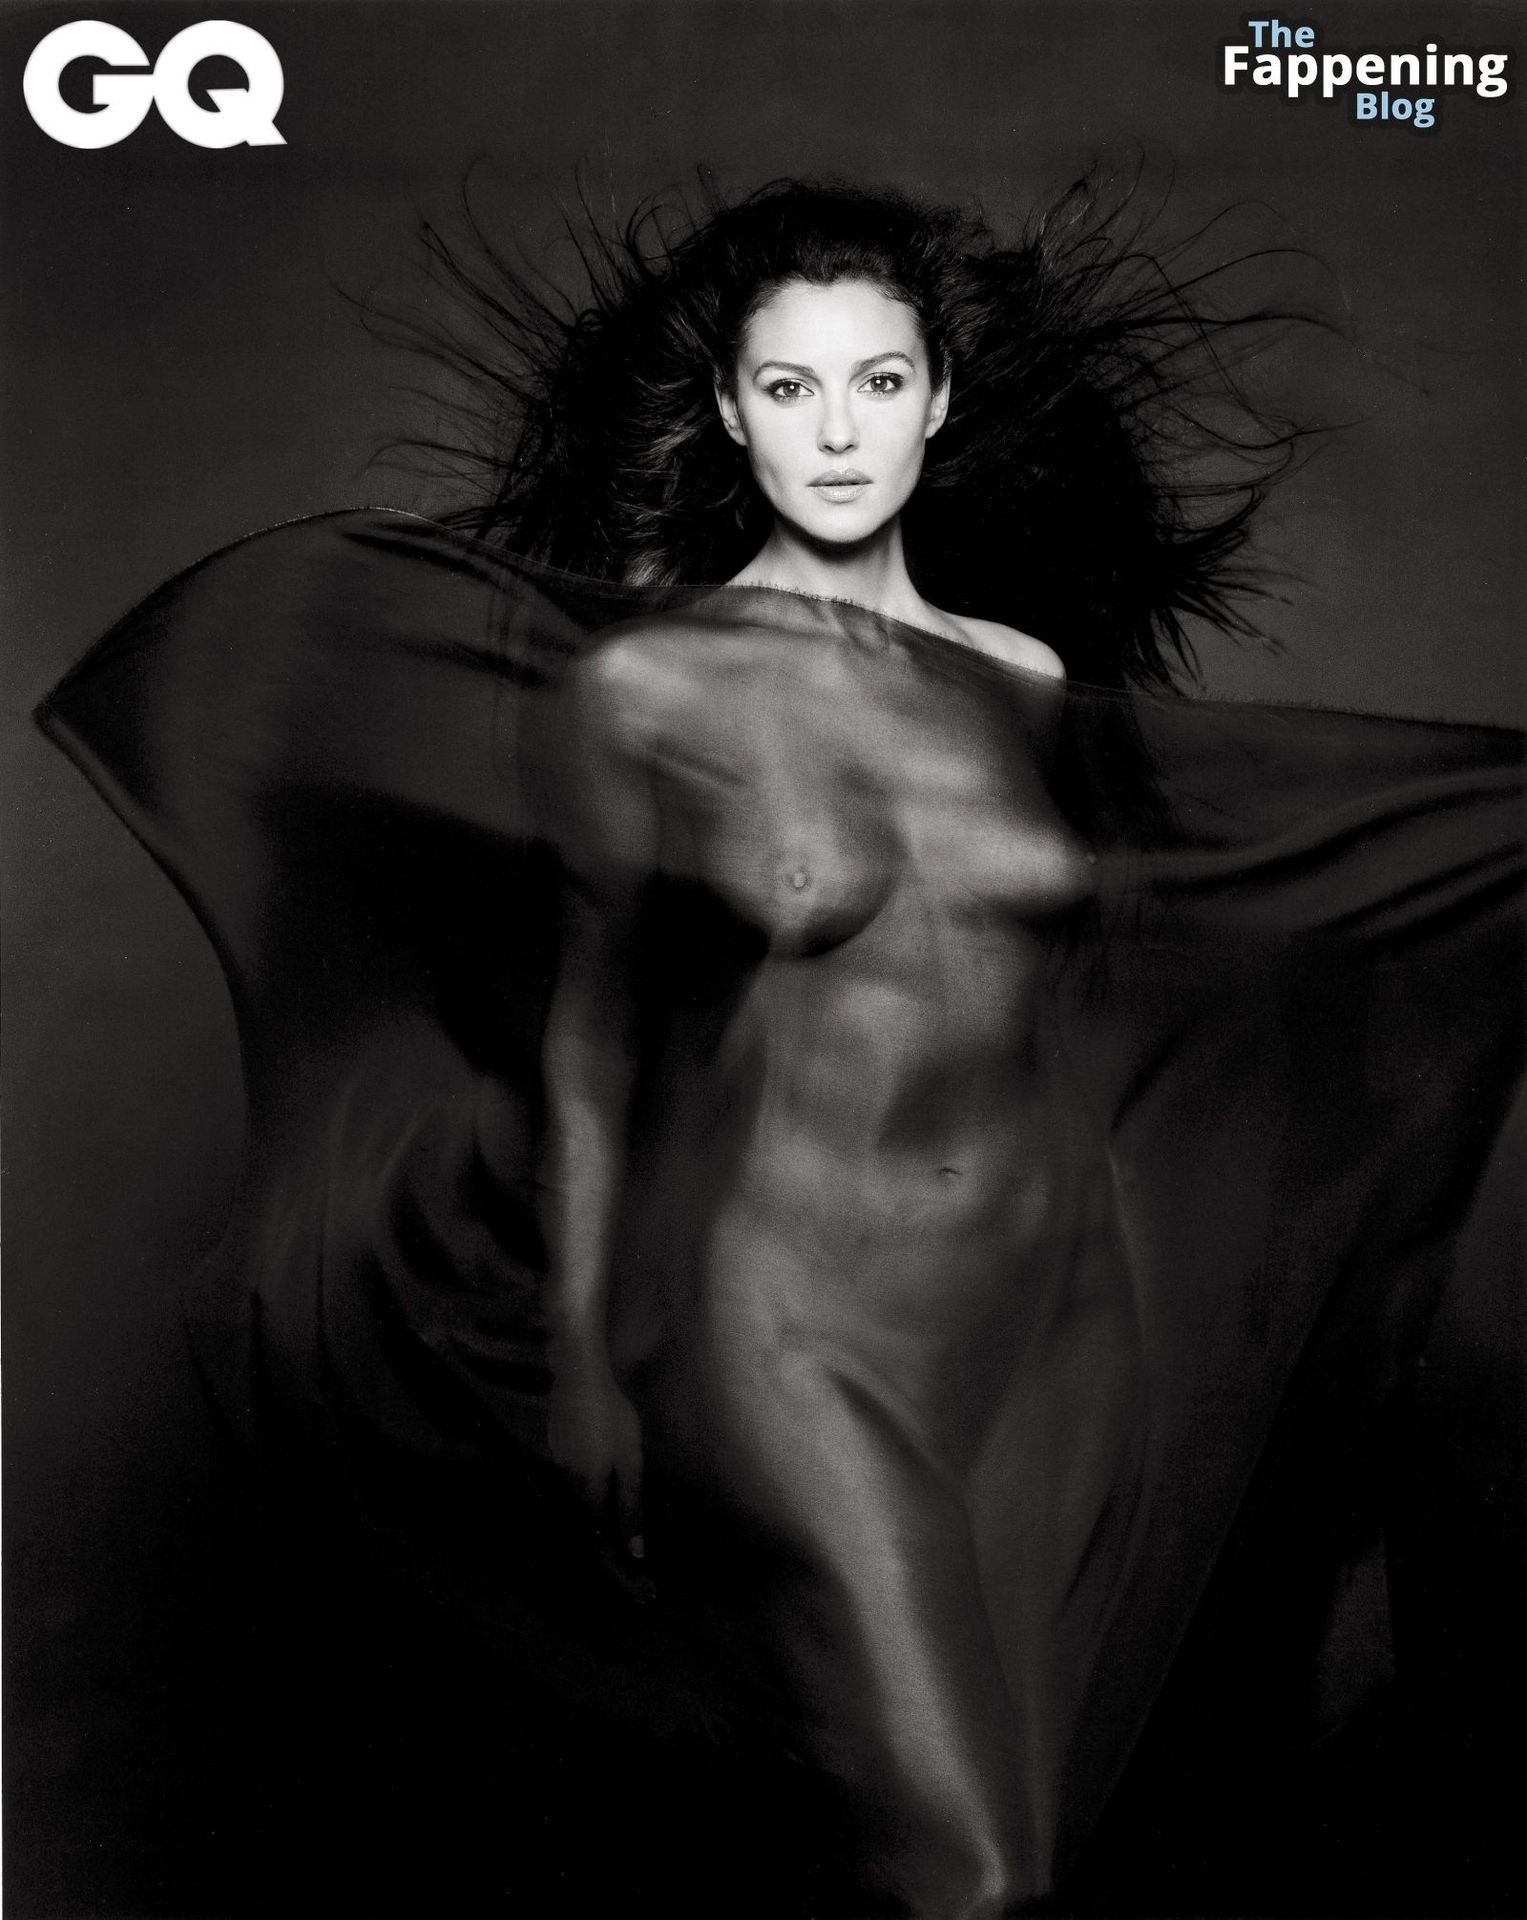 monica-bellucci-topless-photo-shoot-perfect-breasts-5-thefappeningblog.com_.jpg